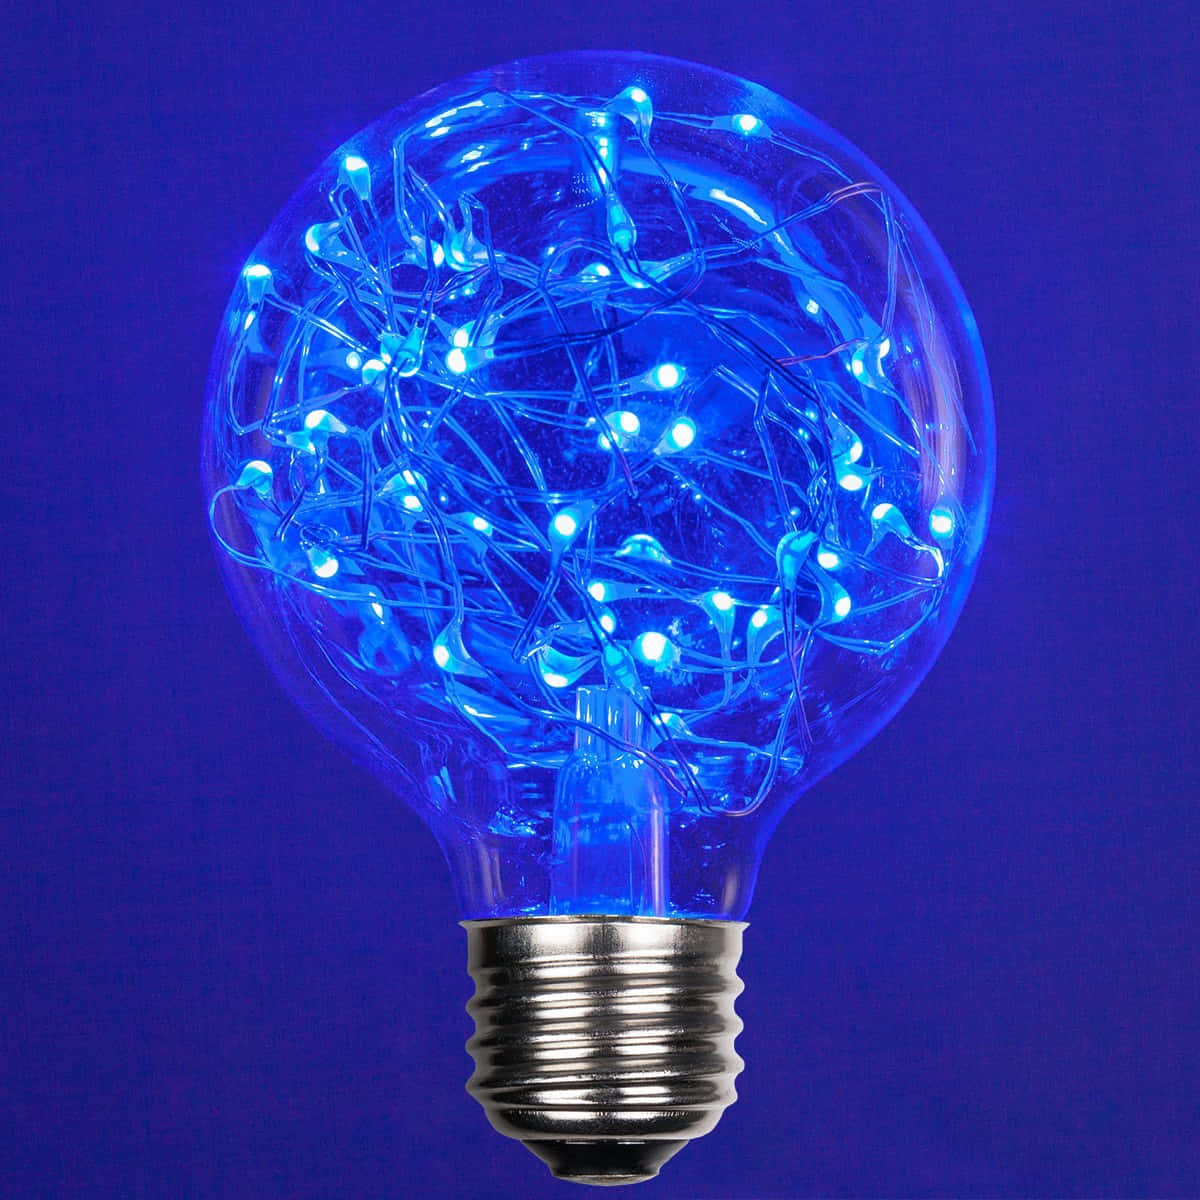 Blaueled-glühbirne Mit Blauem Licht